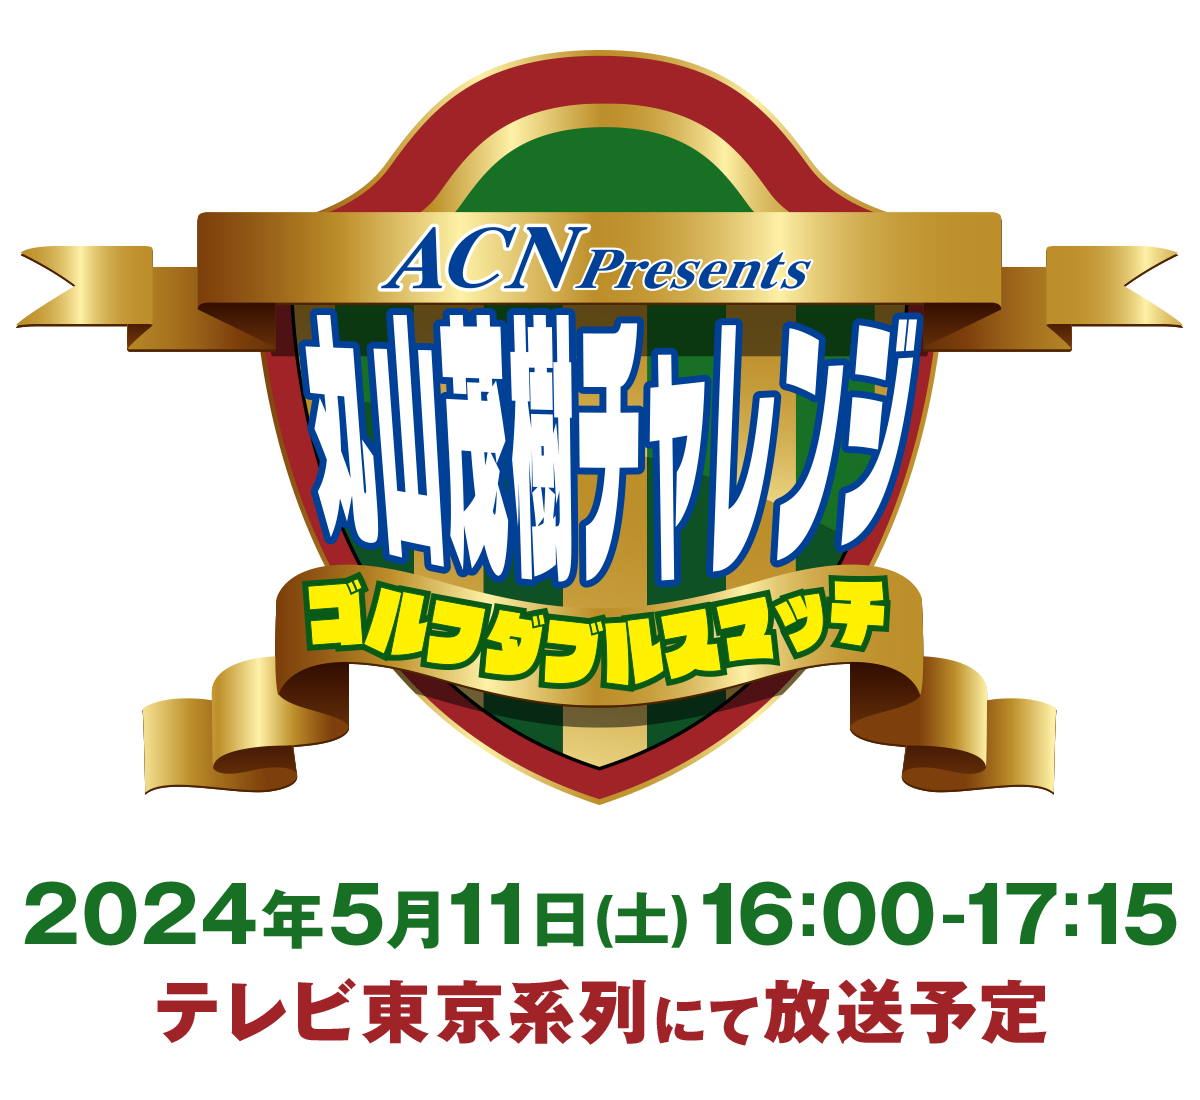 ACN presents 丸山茂樹チャレンジ ゴルフダブルスマッチ